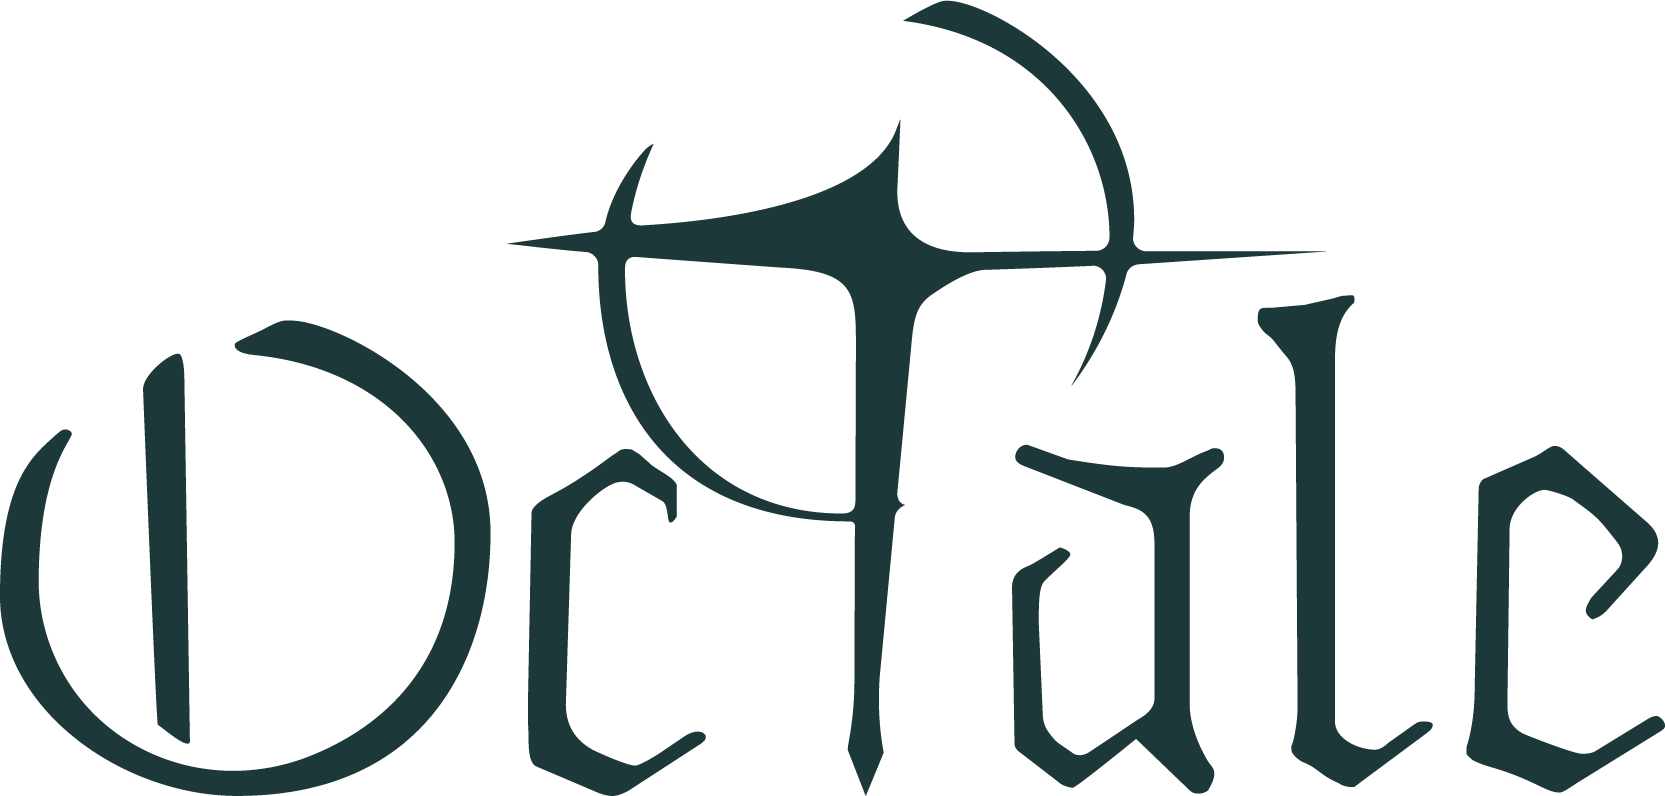 Octale band logo